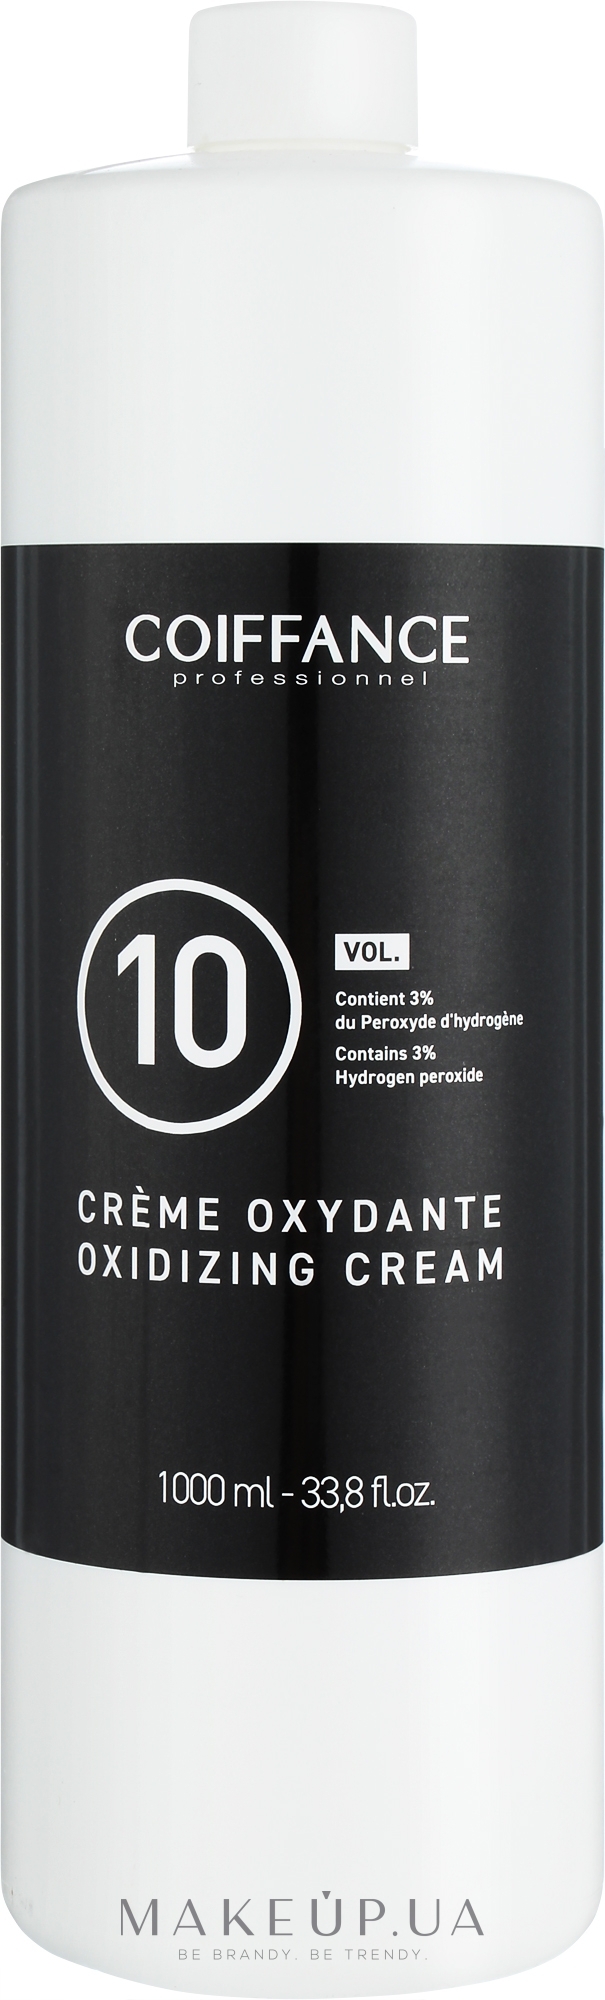 Крем-оксидант 3 % - Coiffance Oxidizing Cream 10 VOL — фото 1000ml